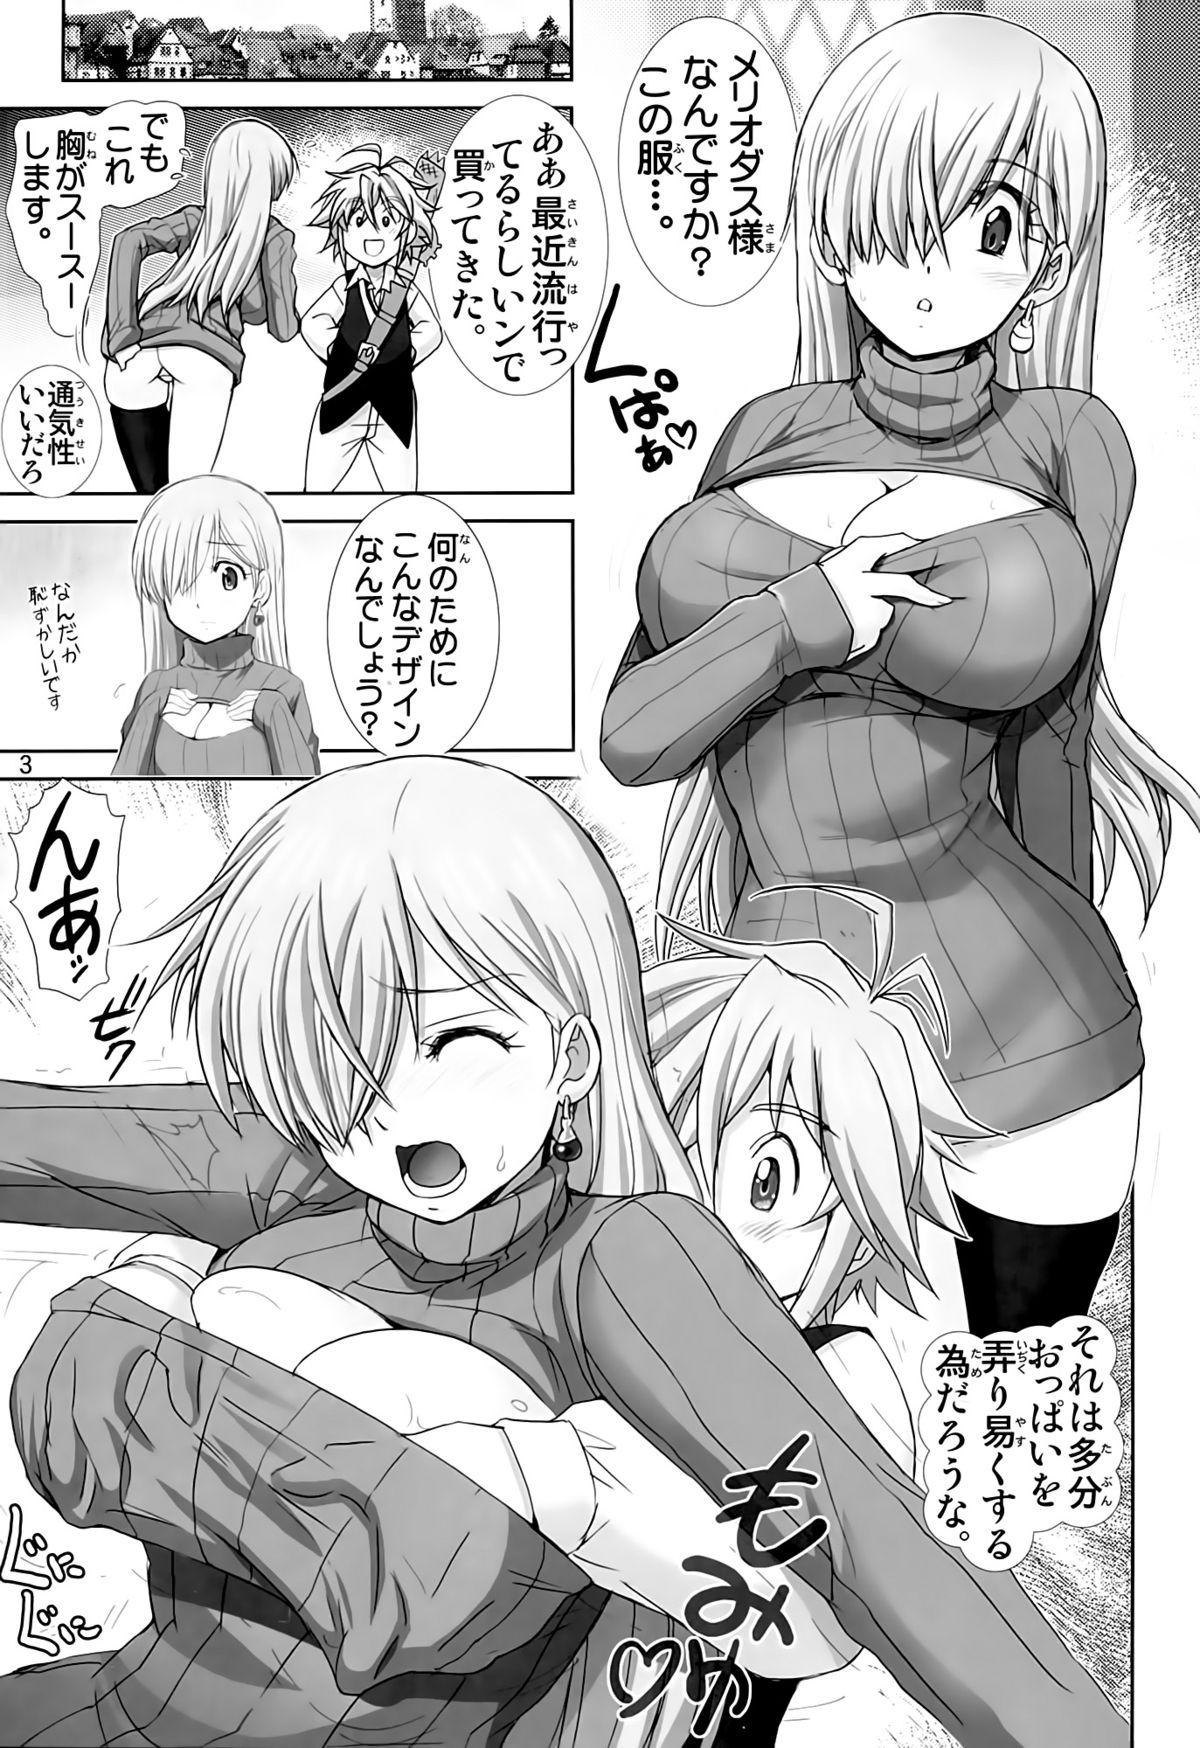 Crossdresser Elizabeth ni Rei no Sweater Kisete mita - Nanatsu no taizai Tease - Page 2